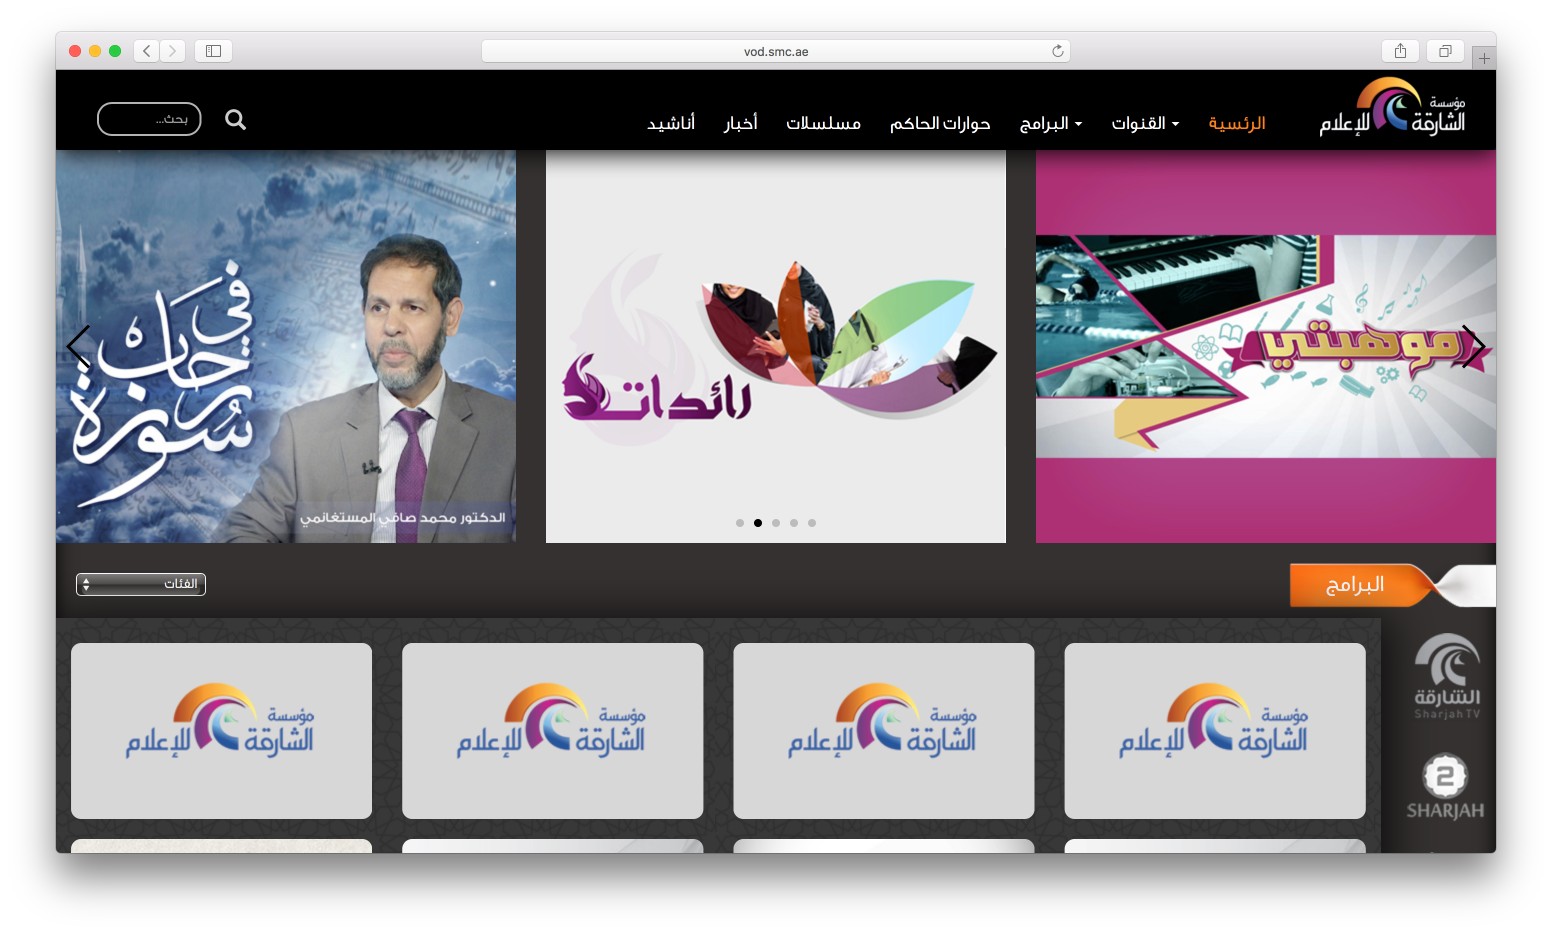 Sharjah Media Group VOD